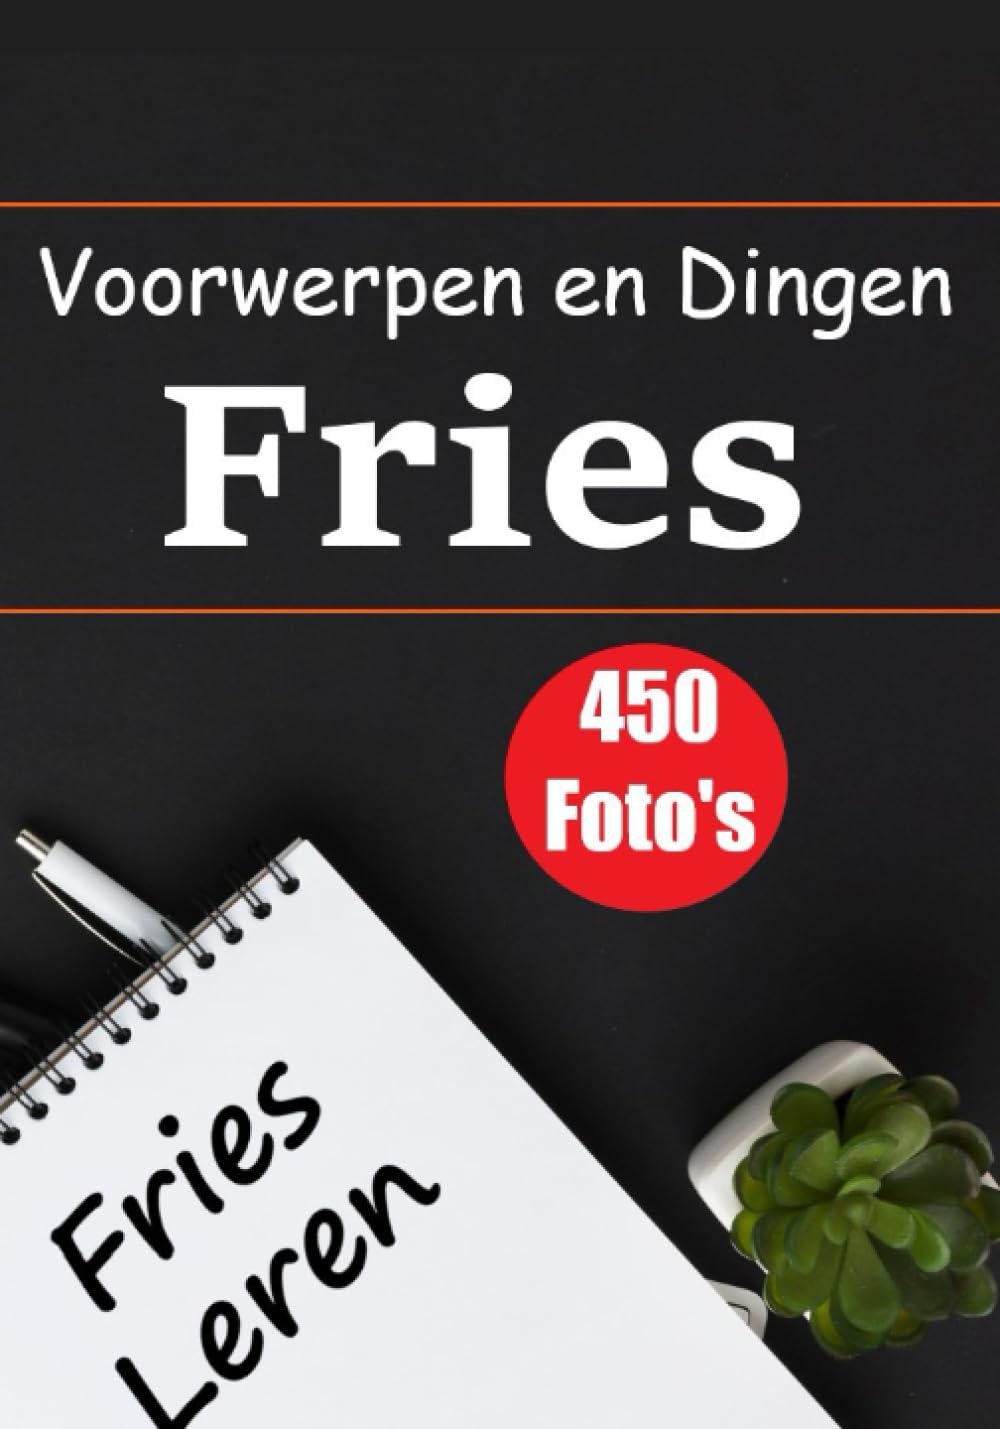 De Friese Encyclopedie: Een Visuele Gids met 450 Voorwerpen en Dingen - Skriuwer.com